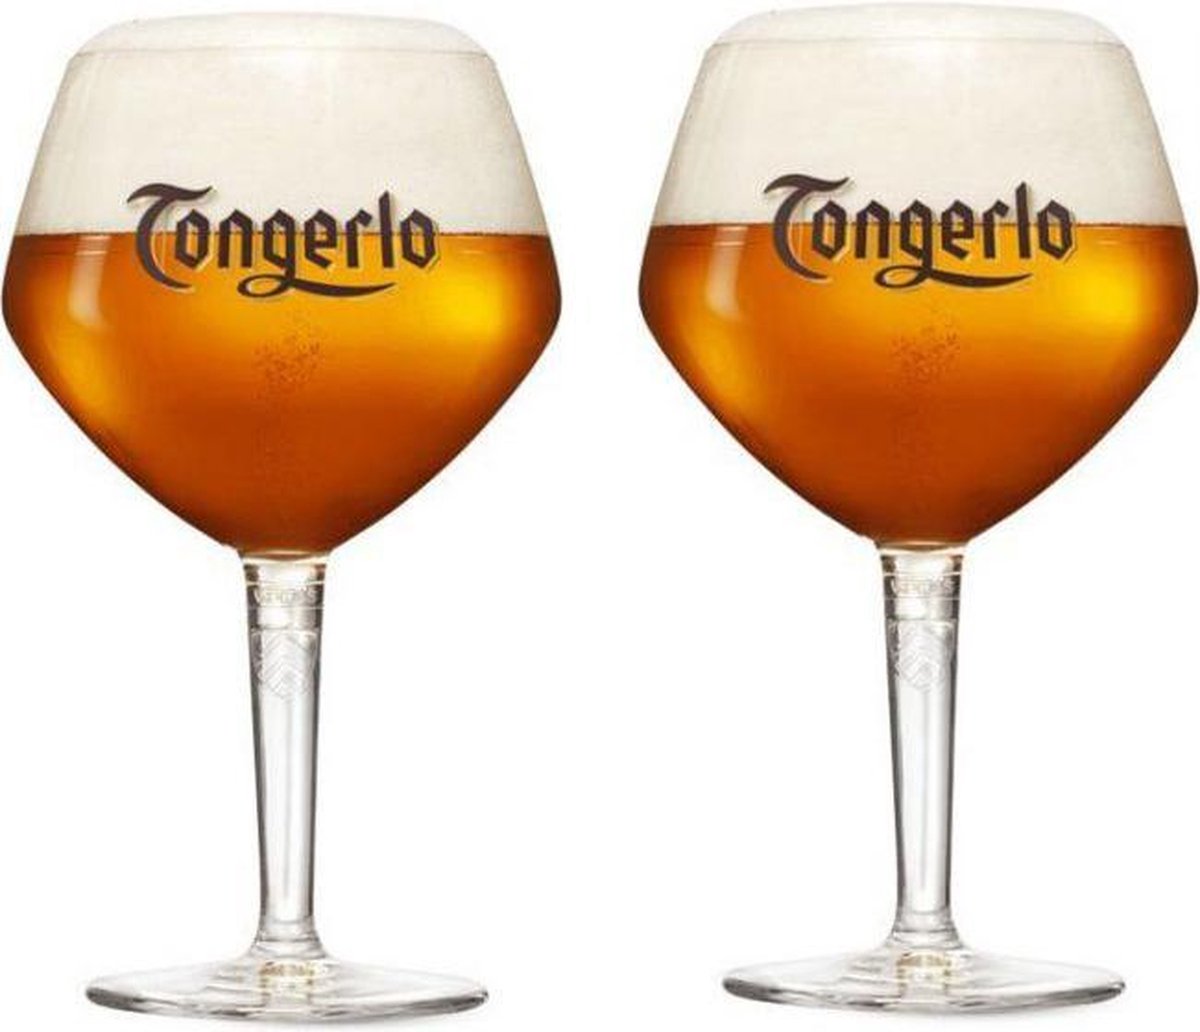 Tongerlo glazen speciaalbier glas bierglas nieuwe editie 2 stuks